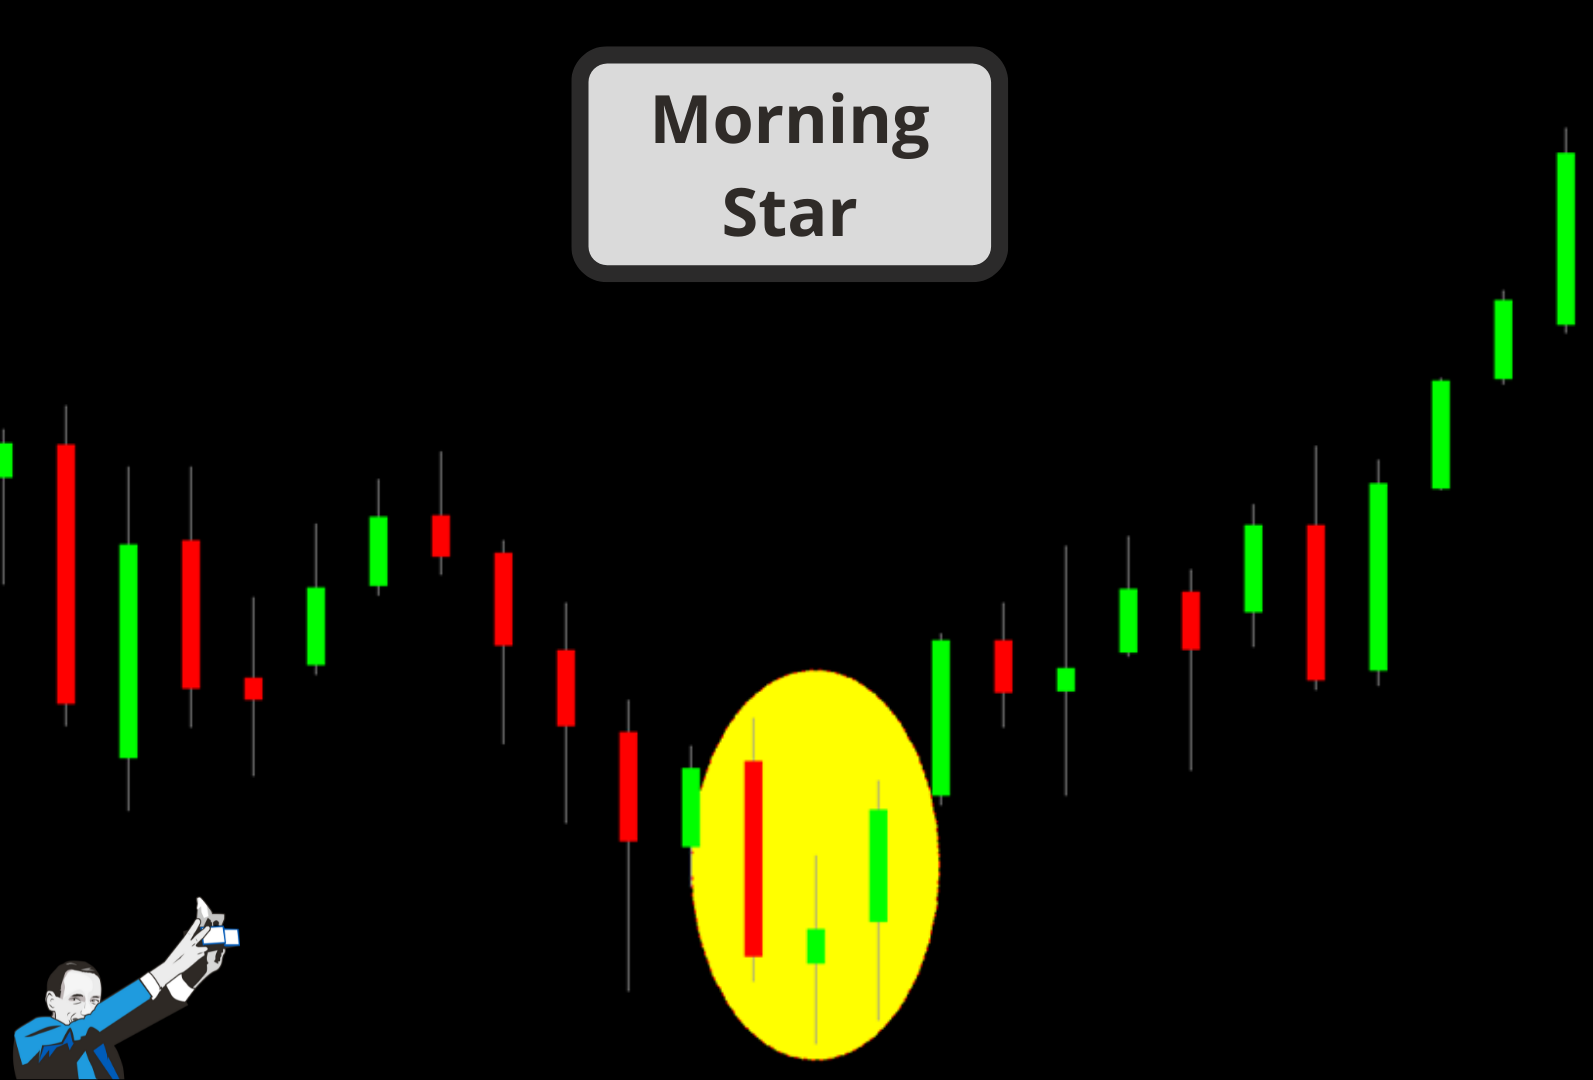 morning star trading price pattern 